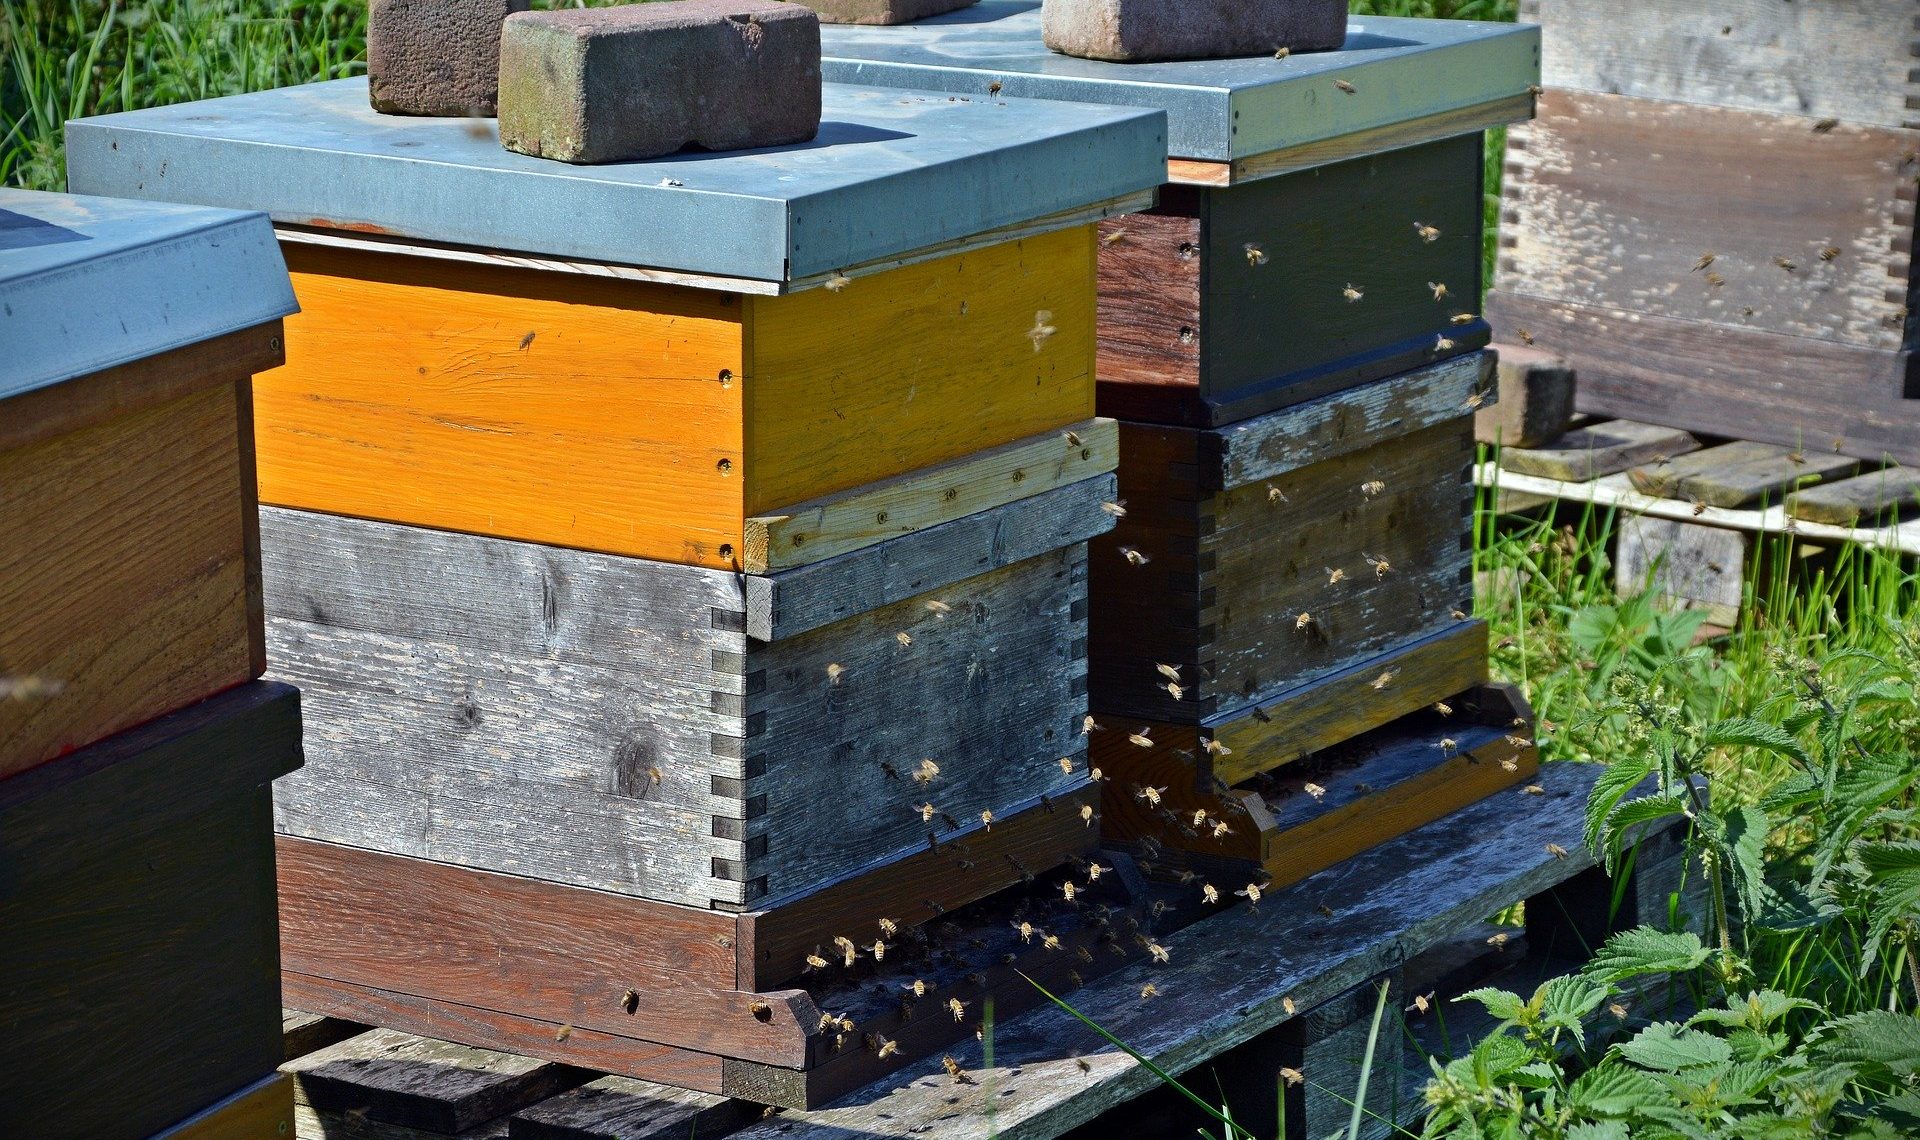 Les programmes nationaux d’aides à la filière apicole prolongés jusqu’au 31 juillet 2022